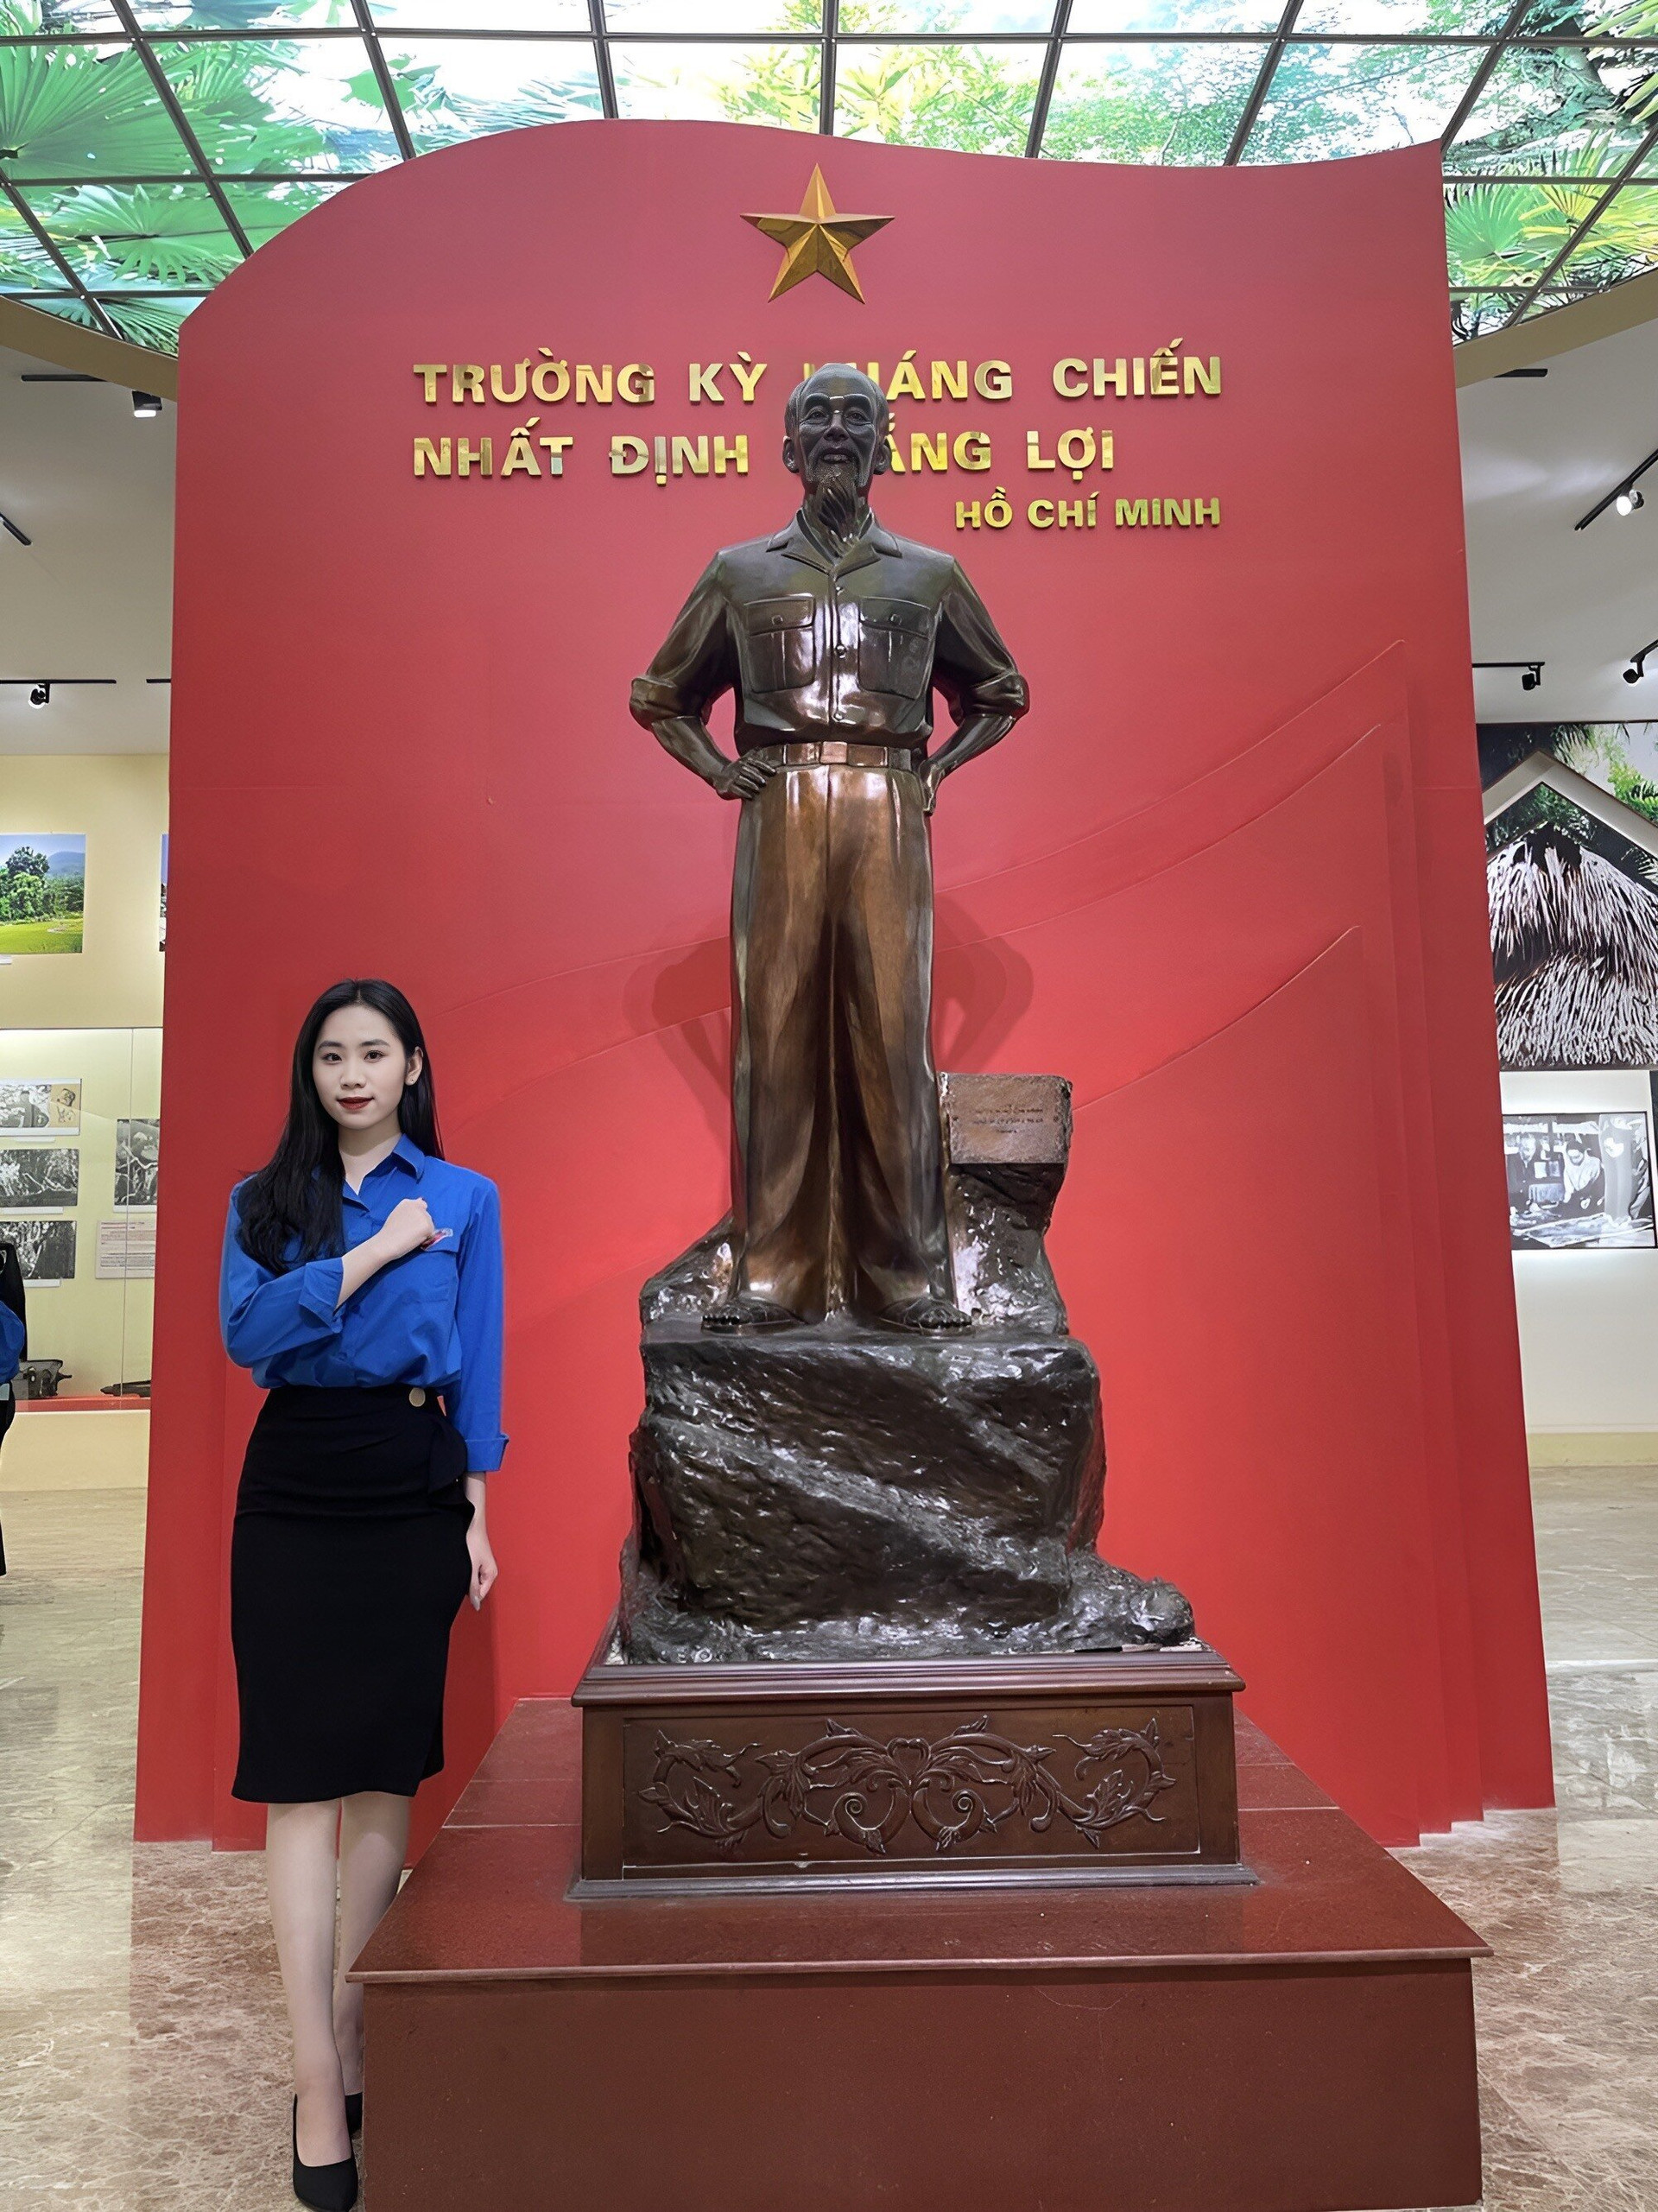 Trong tương lai gần, nữ sinh đặt mục tiêu sớm trở thành Đảng viên chính thức của Đảng cộng sản Việt Nam.